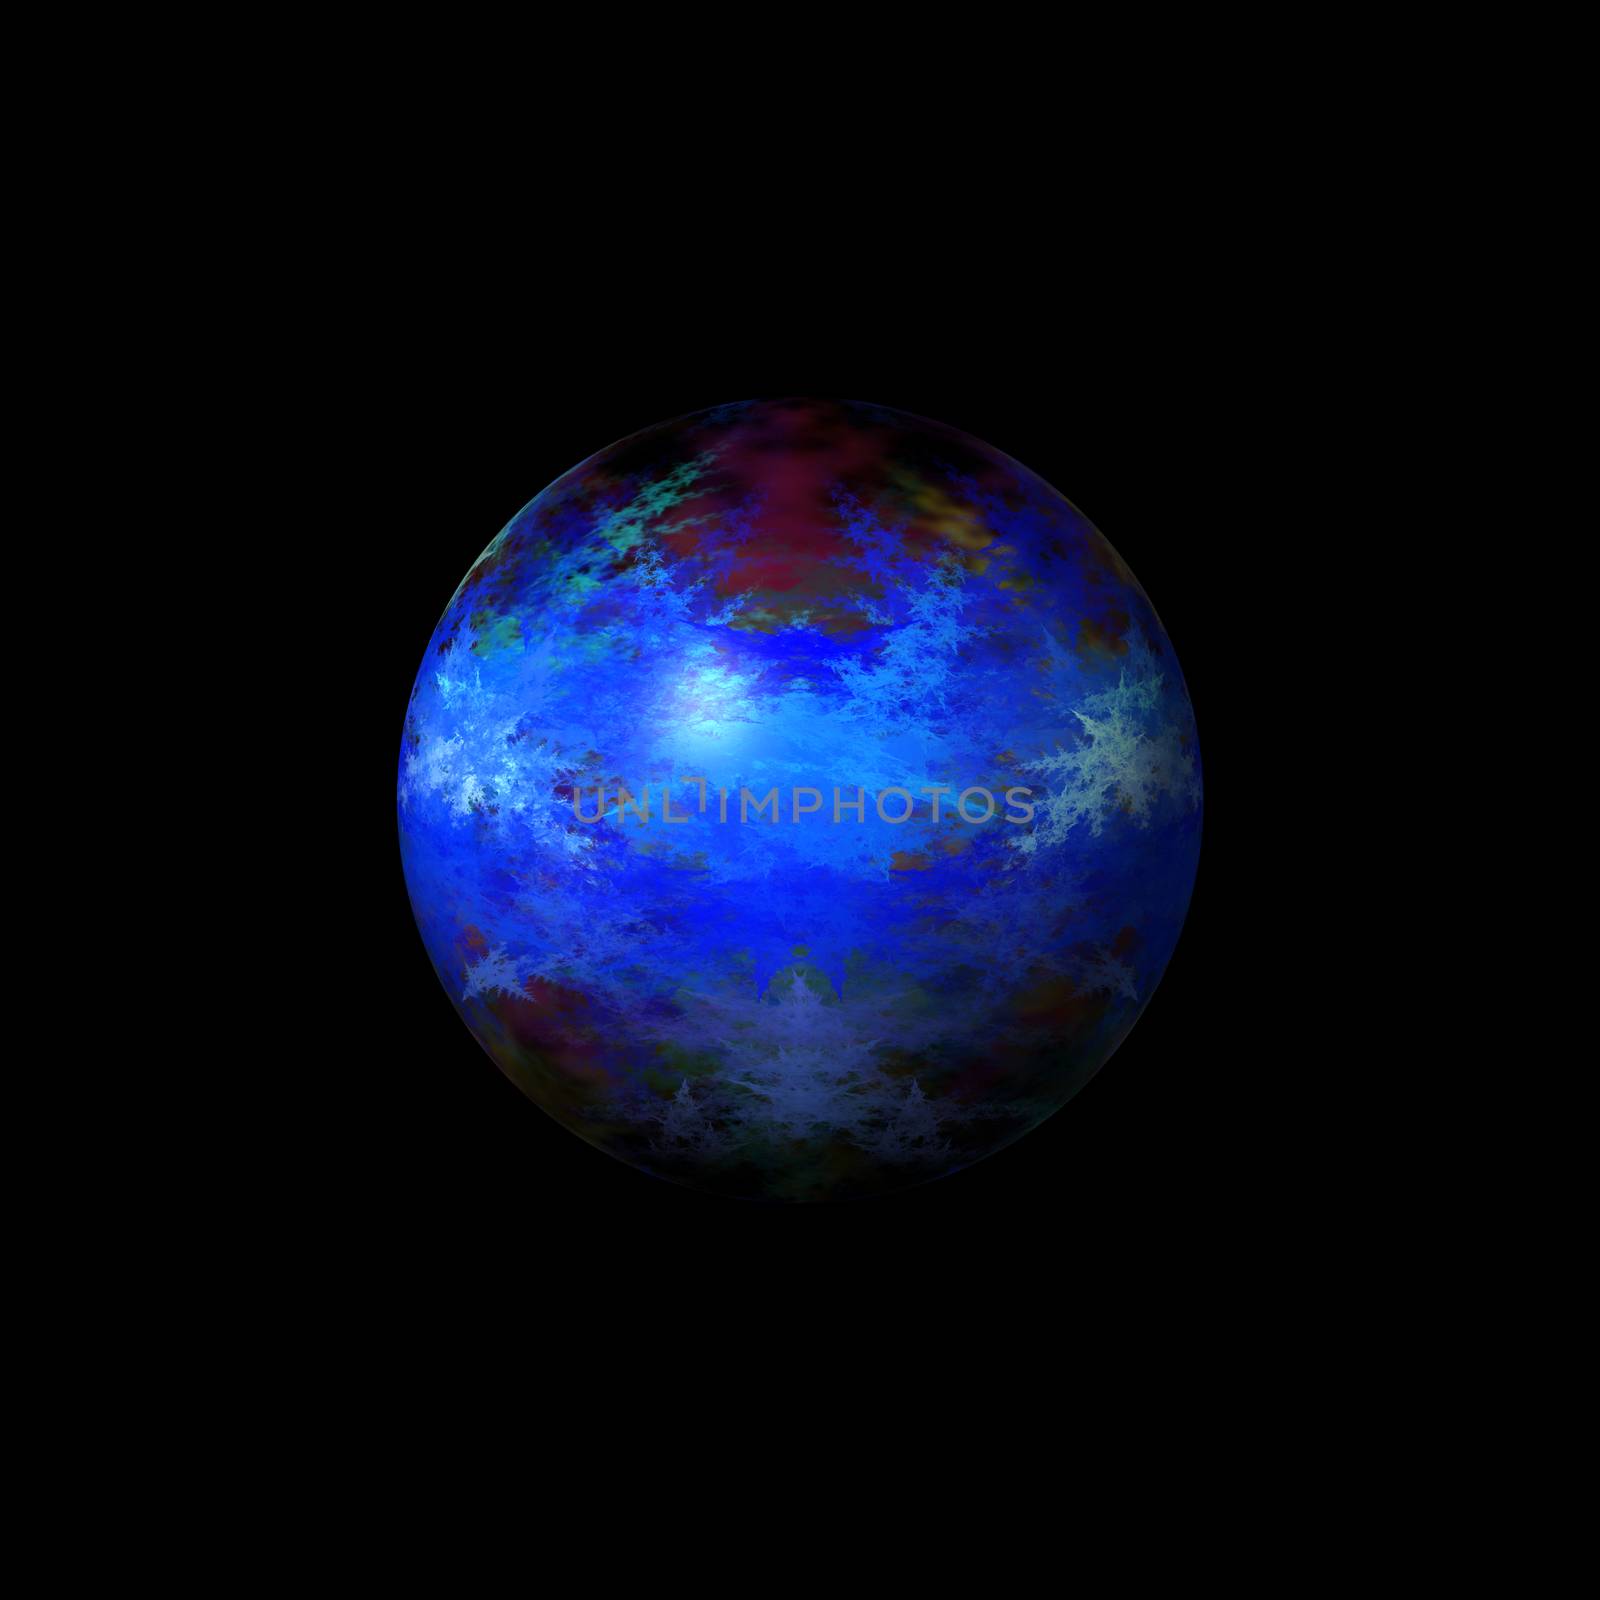 Blue color fractal globe on a black background.